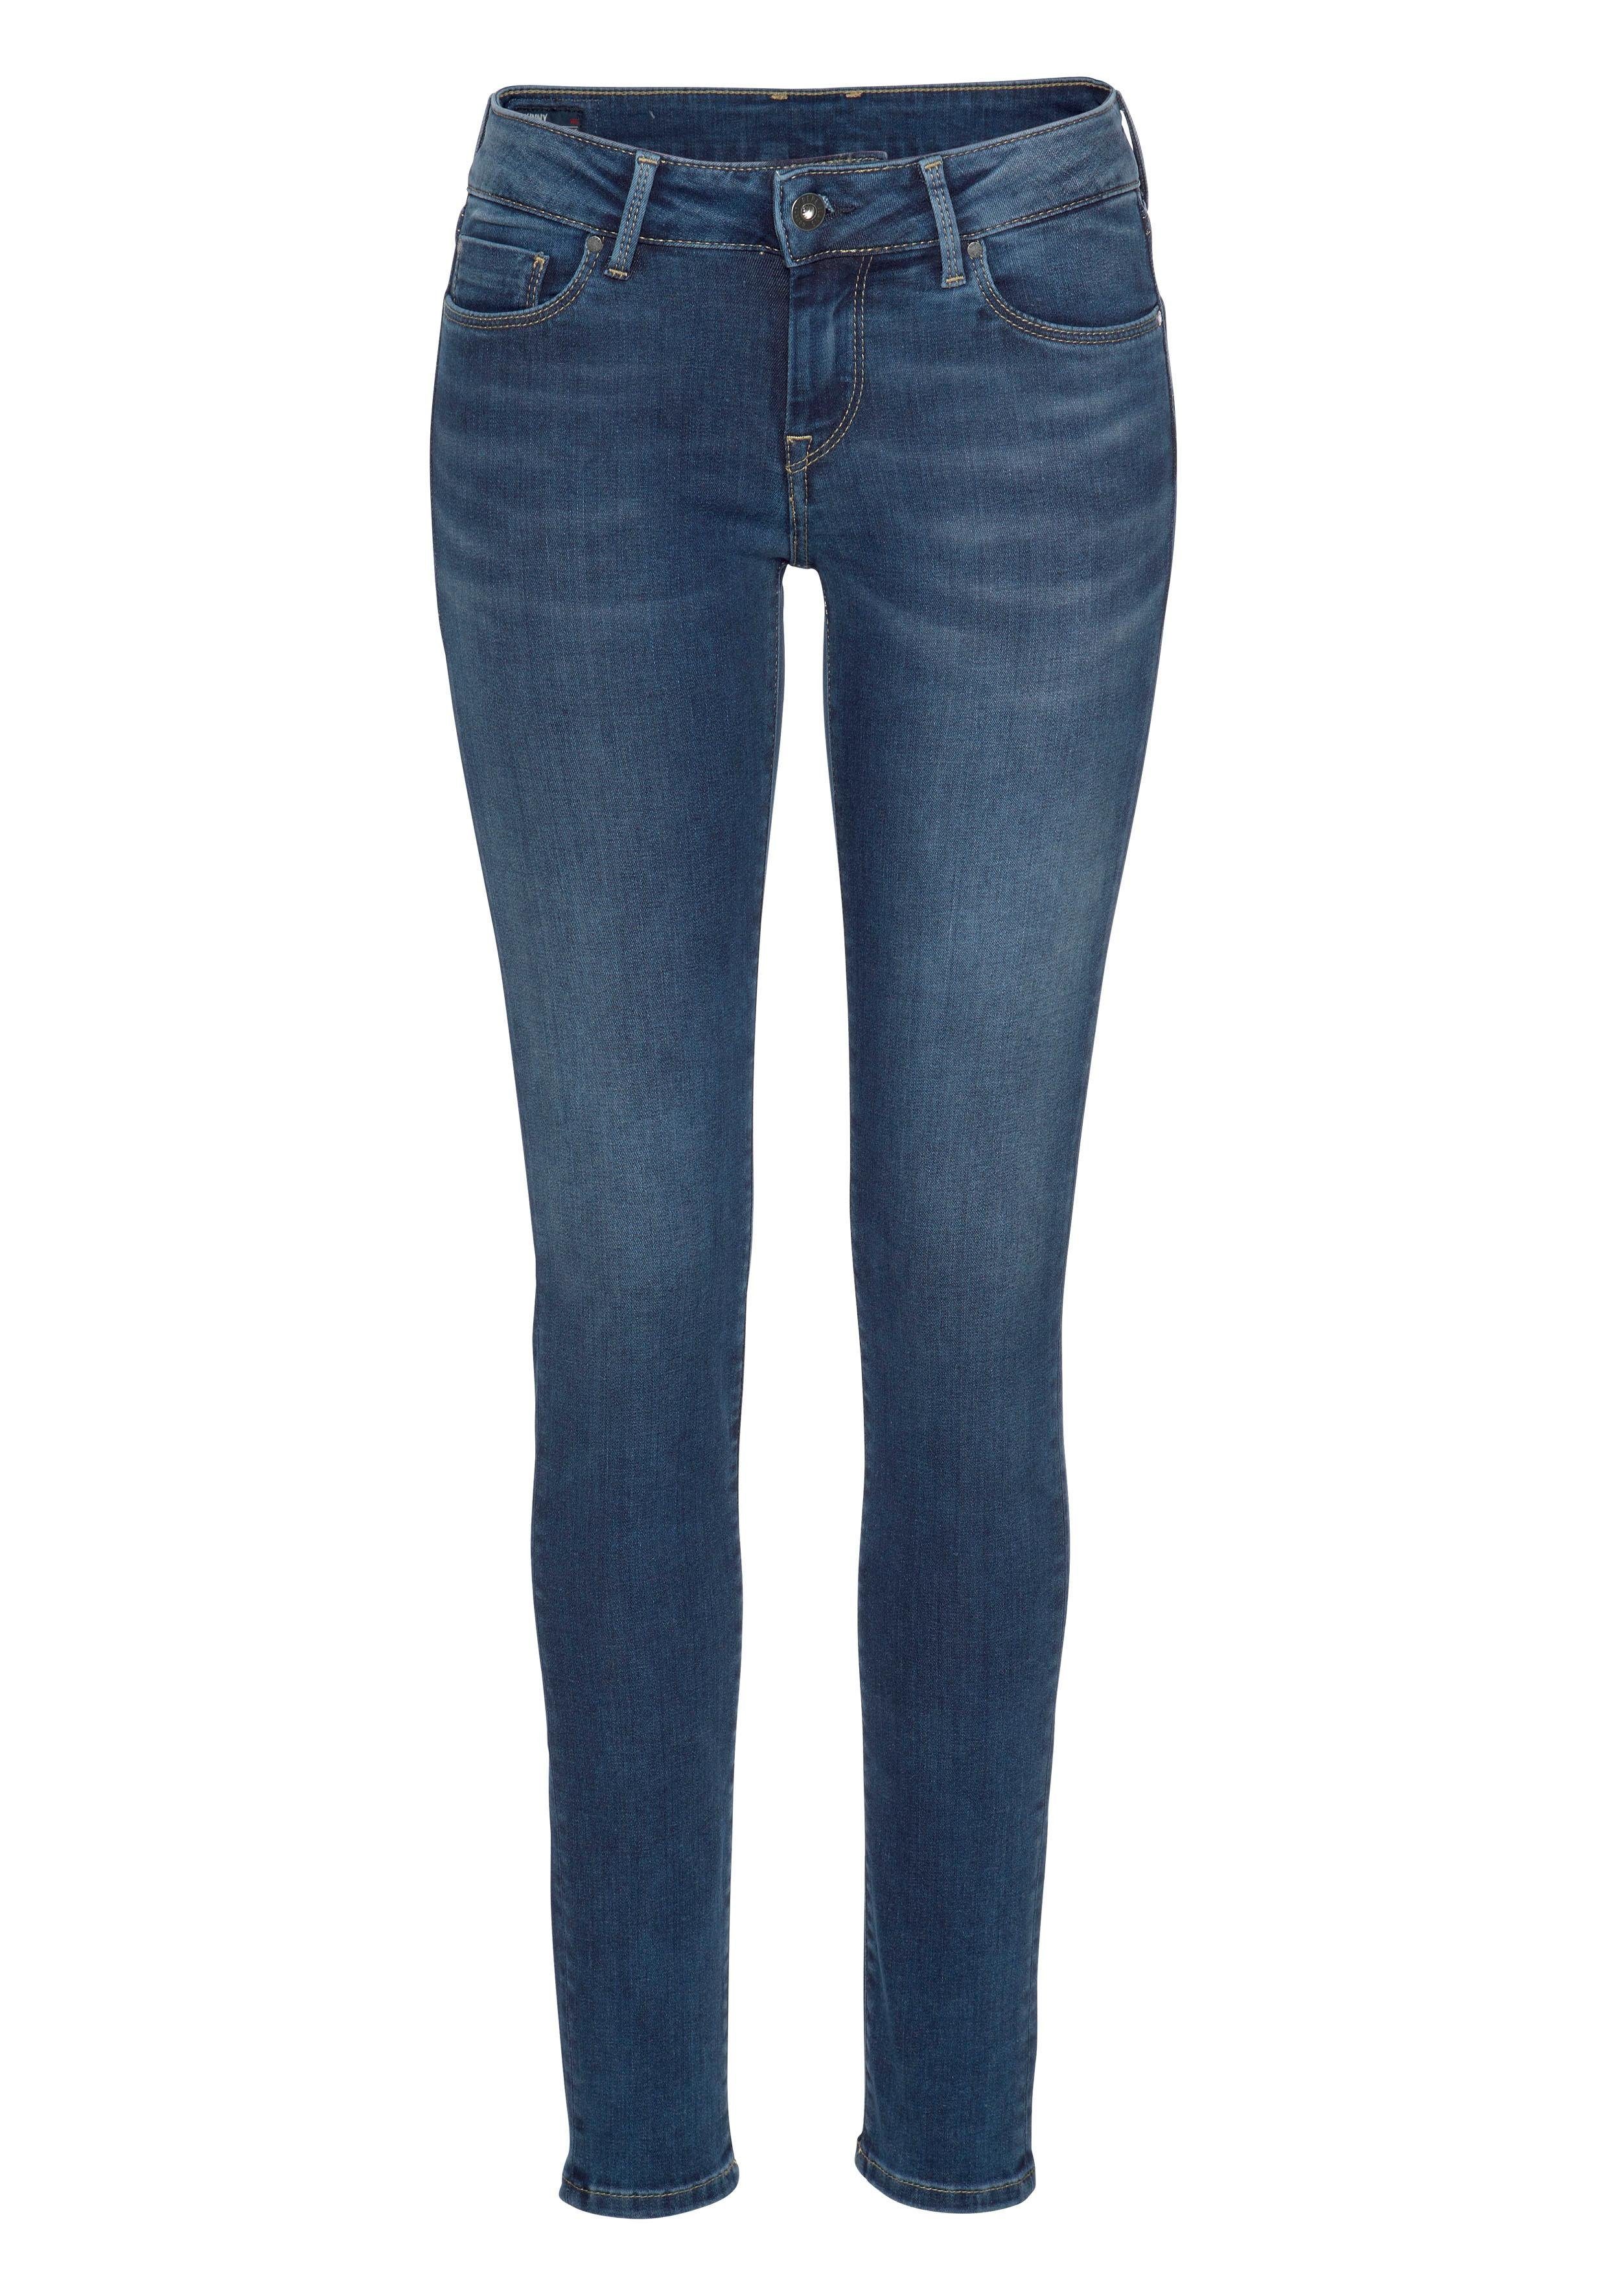 Jeans stretch Stretch-Anteil 1-Knopf Bund und Pepe classic Z63 im SOHO 5-Pocket-Stil Skinny-fit-Jeans mit